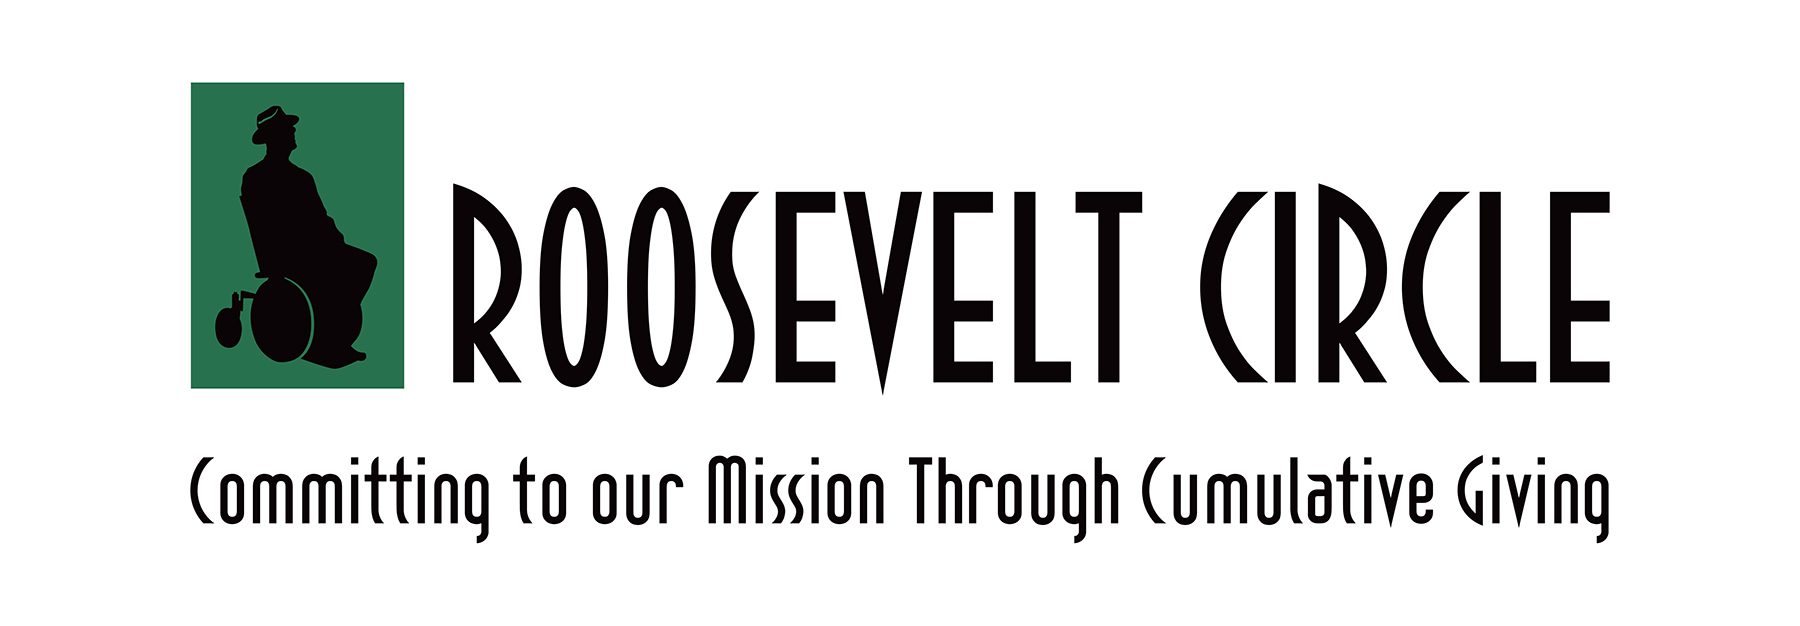 Roosevelt Circle logo